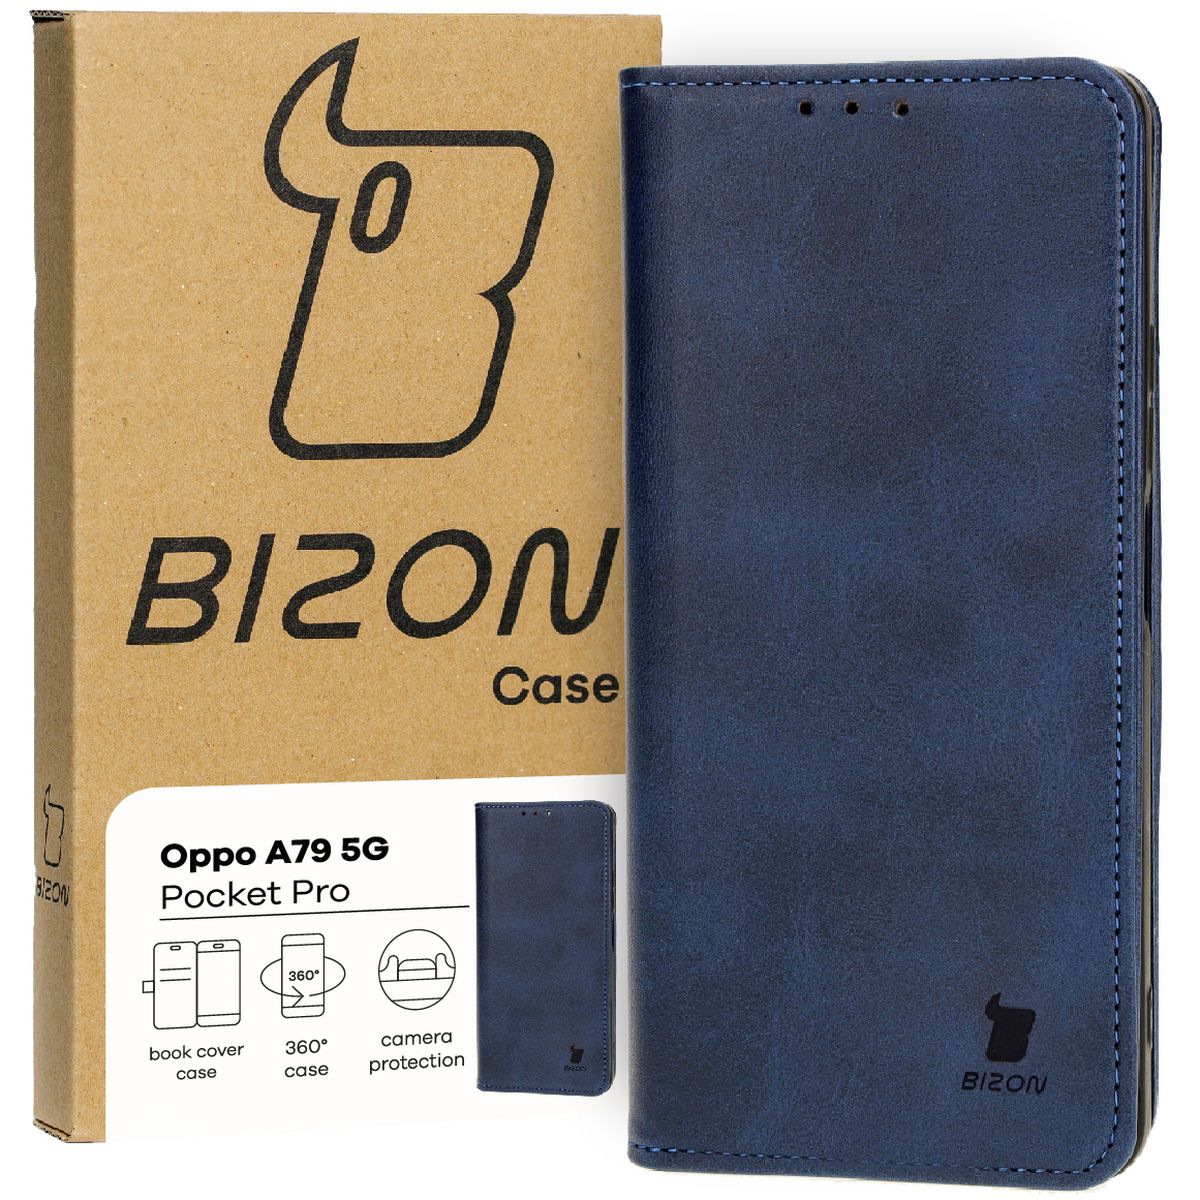 Schutzhülle für Oppo A79 5G, Bizon Case Pocket Pro, Dunkelblau